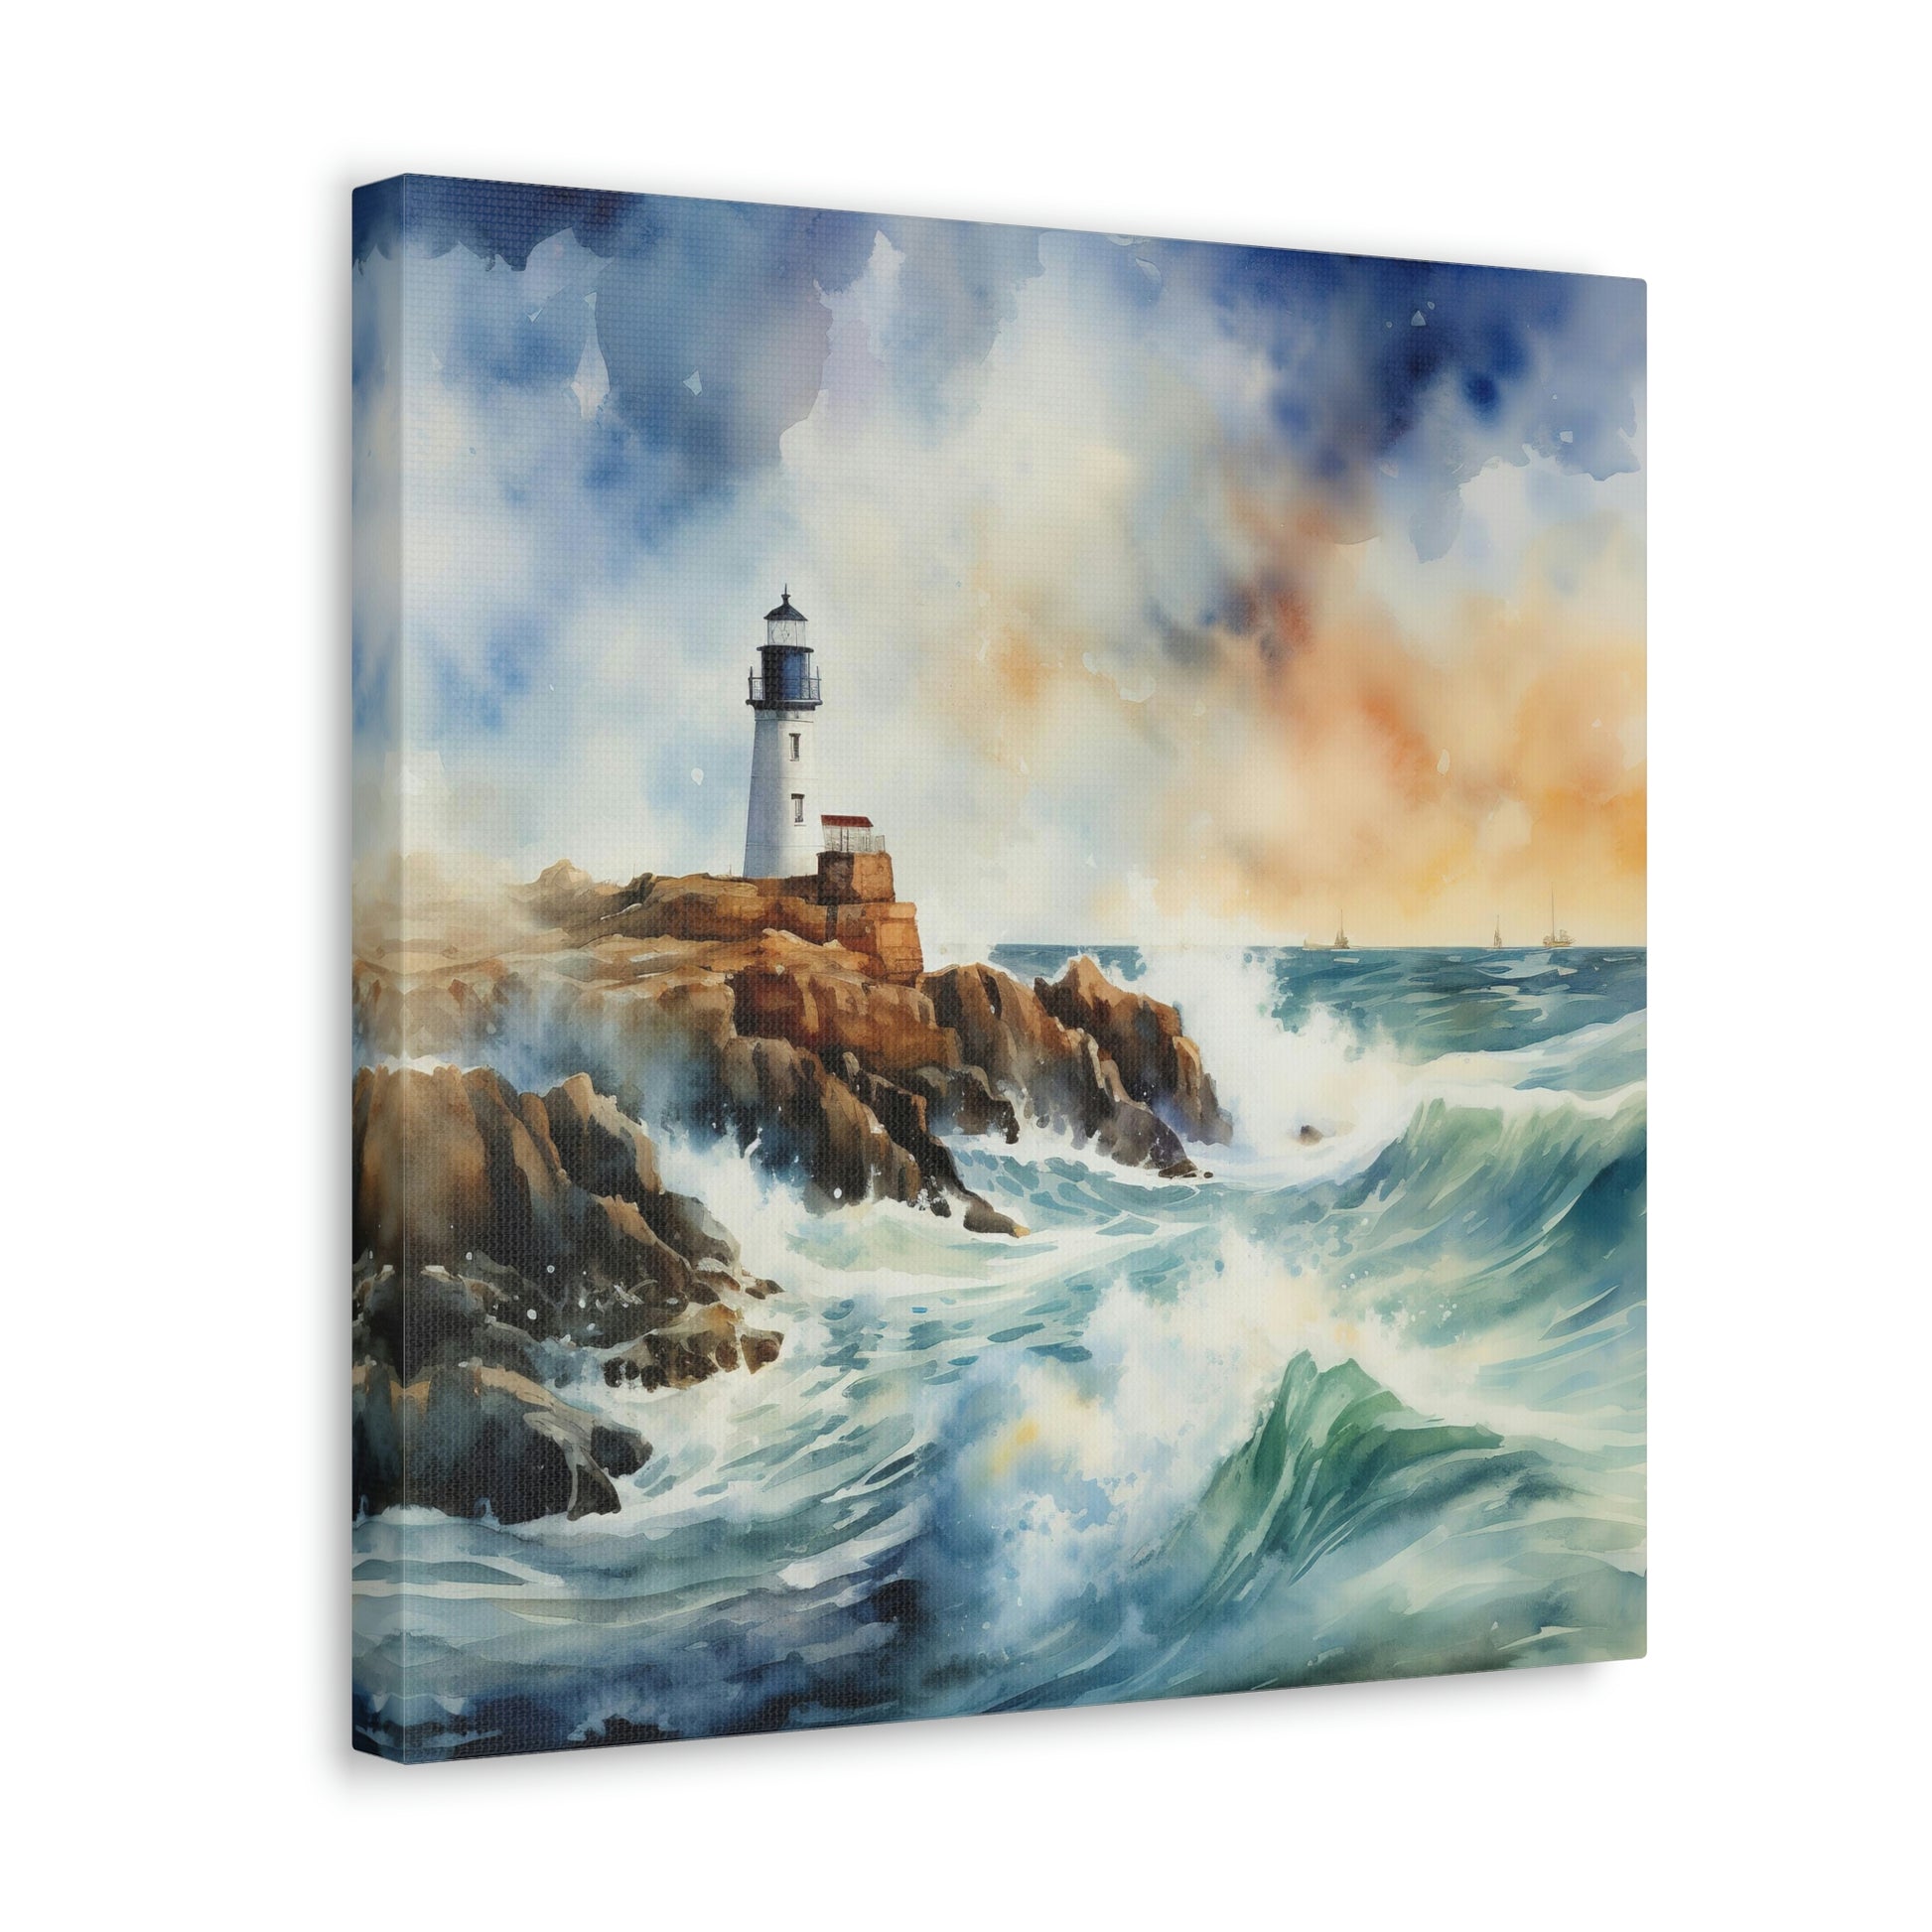 nautical lighthouse canvas wall decor, lighthouse canvas wall art print for coastal room